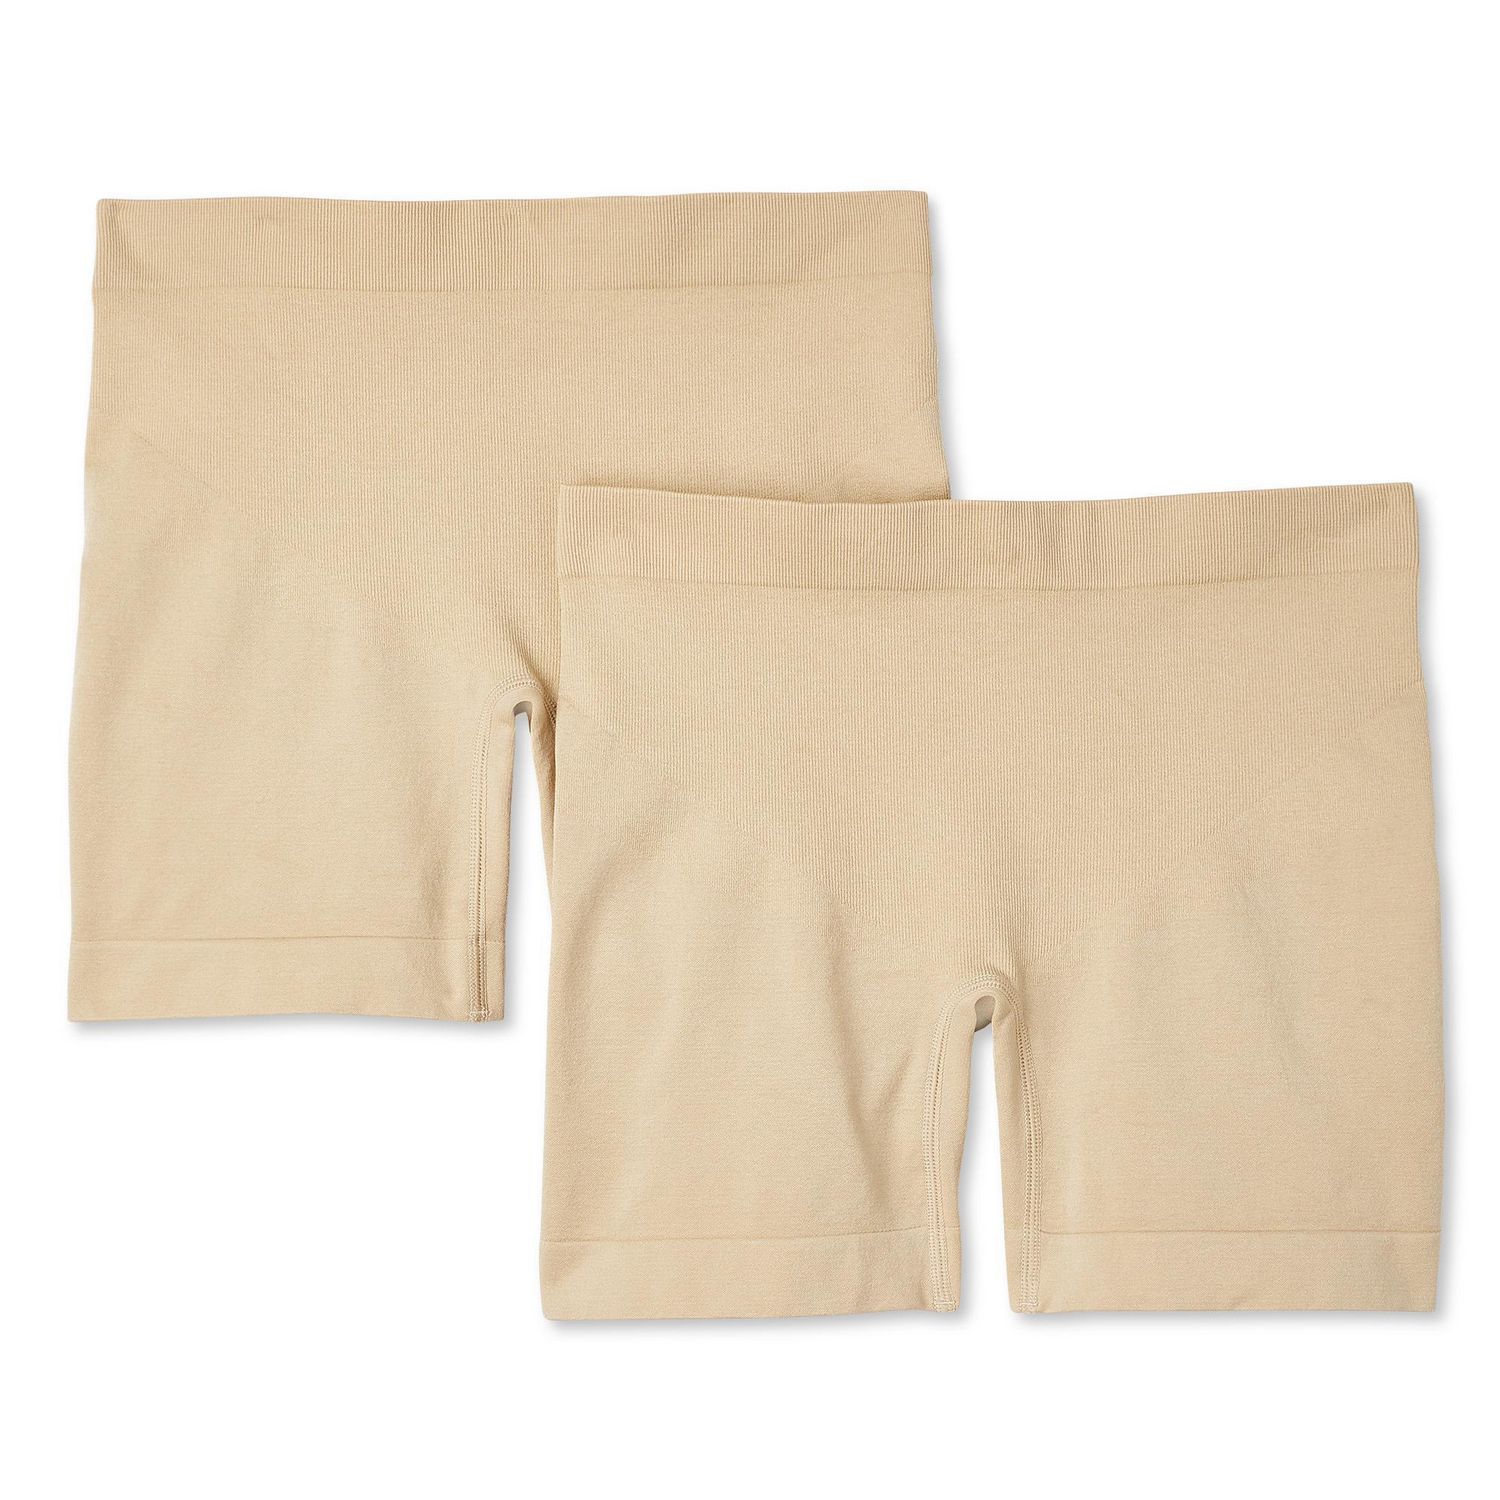 3/15$ George Shapewear Seamless Boy short  Women's shapewear, Shapewear,  Boy shorts